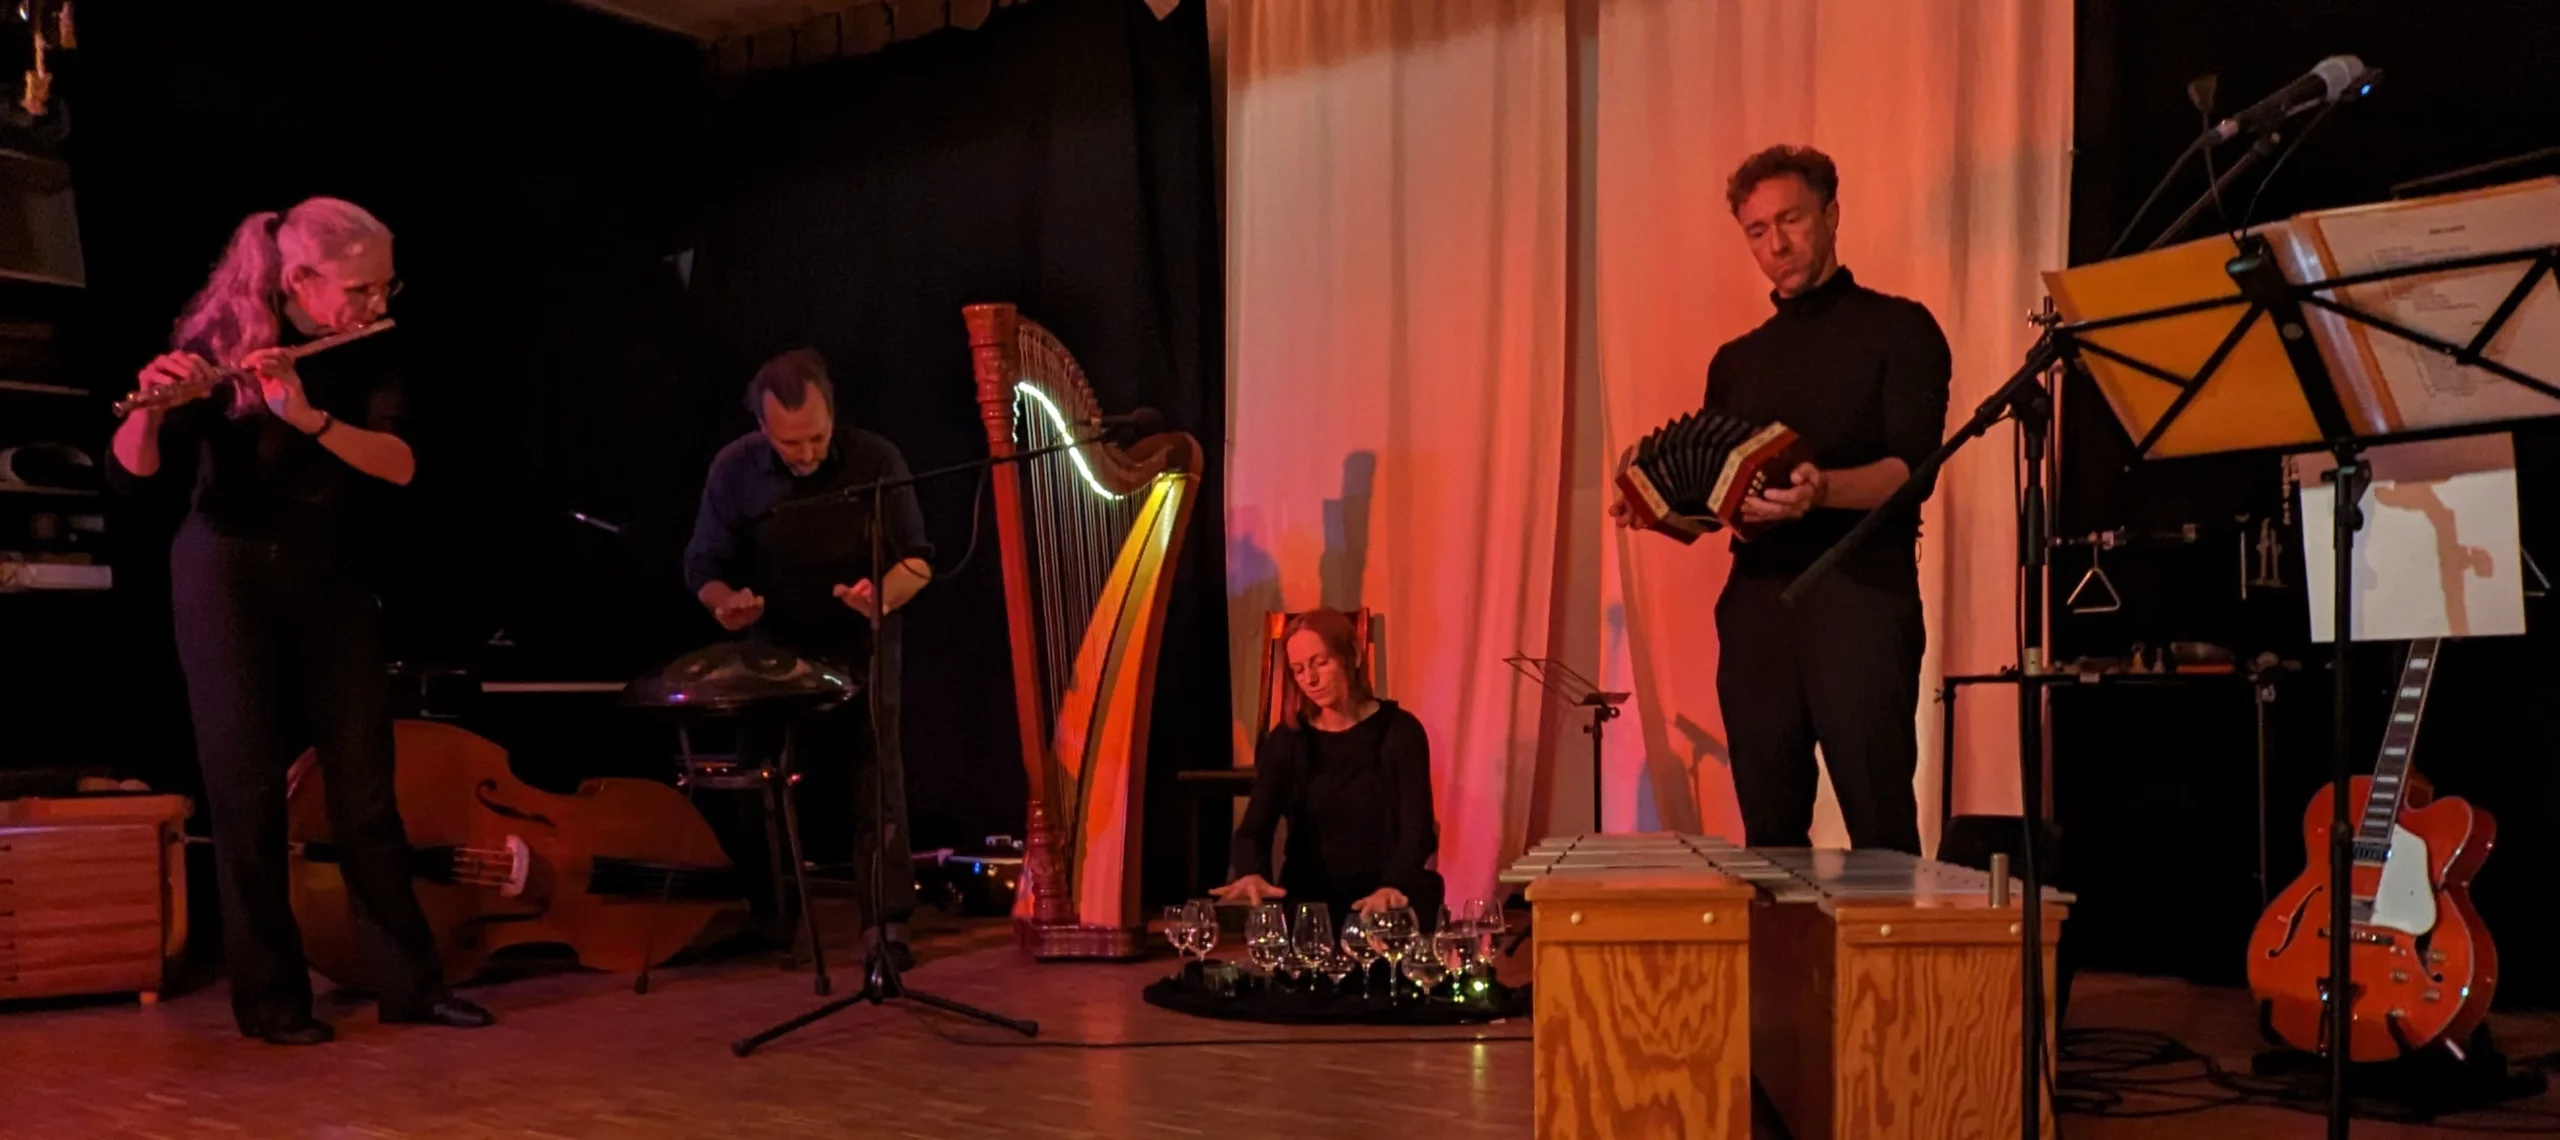 Das Stille-Ensemble spielt mit Instrumenten auf der Bühne